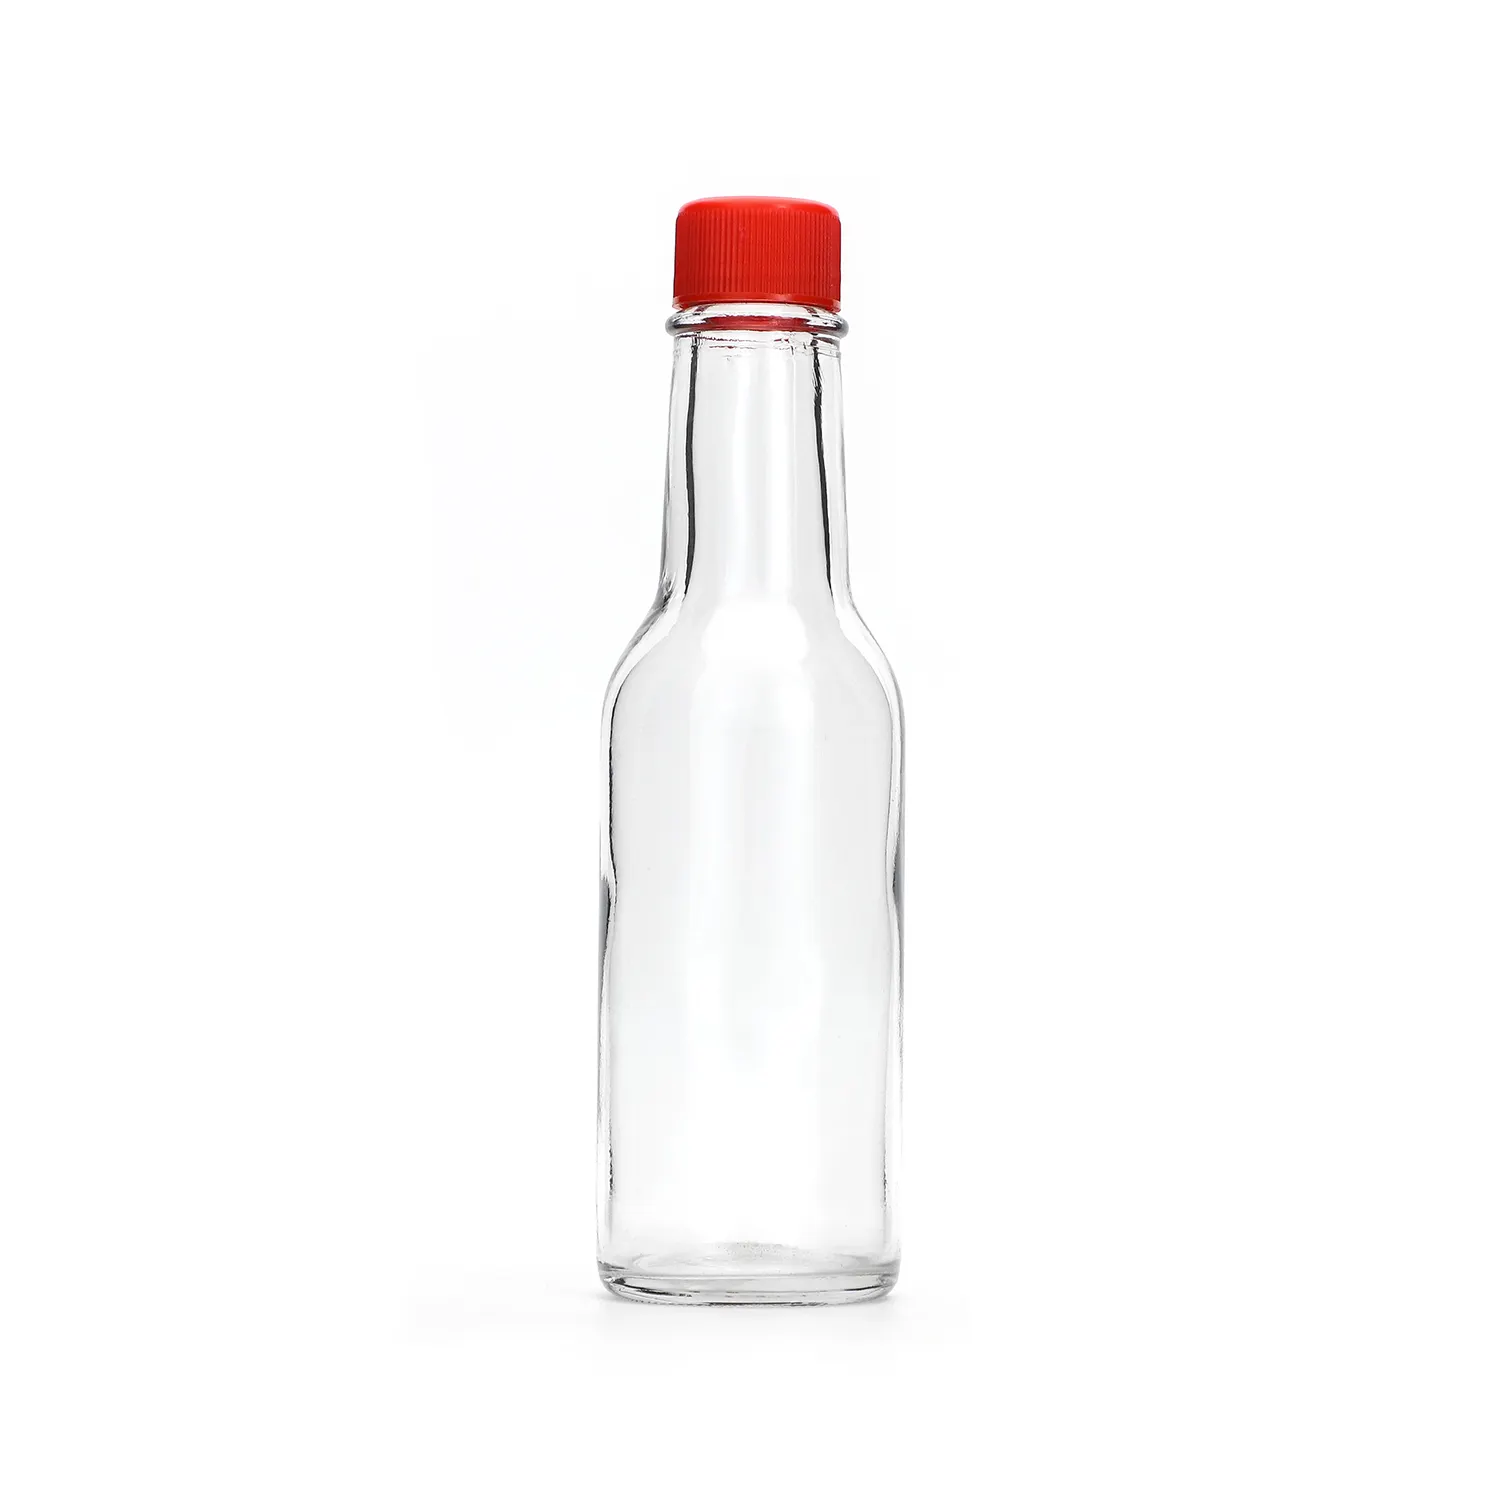 Haushaltsglas auslaufsicher flasche krug soja soße essig quadratische flasche mexikanisches glas